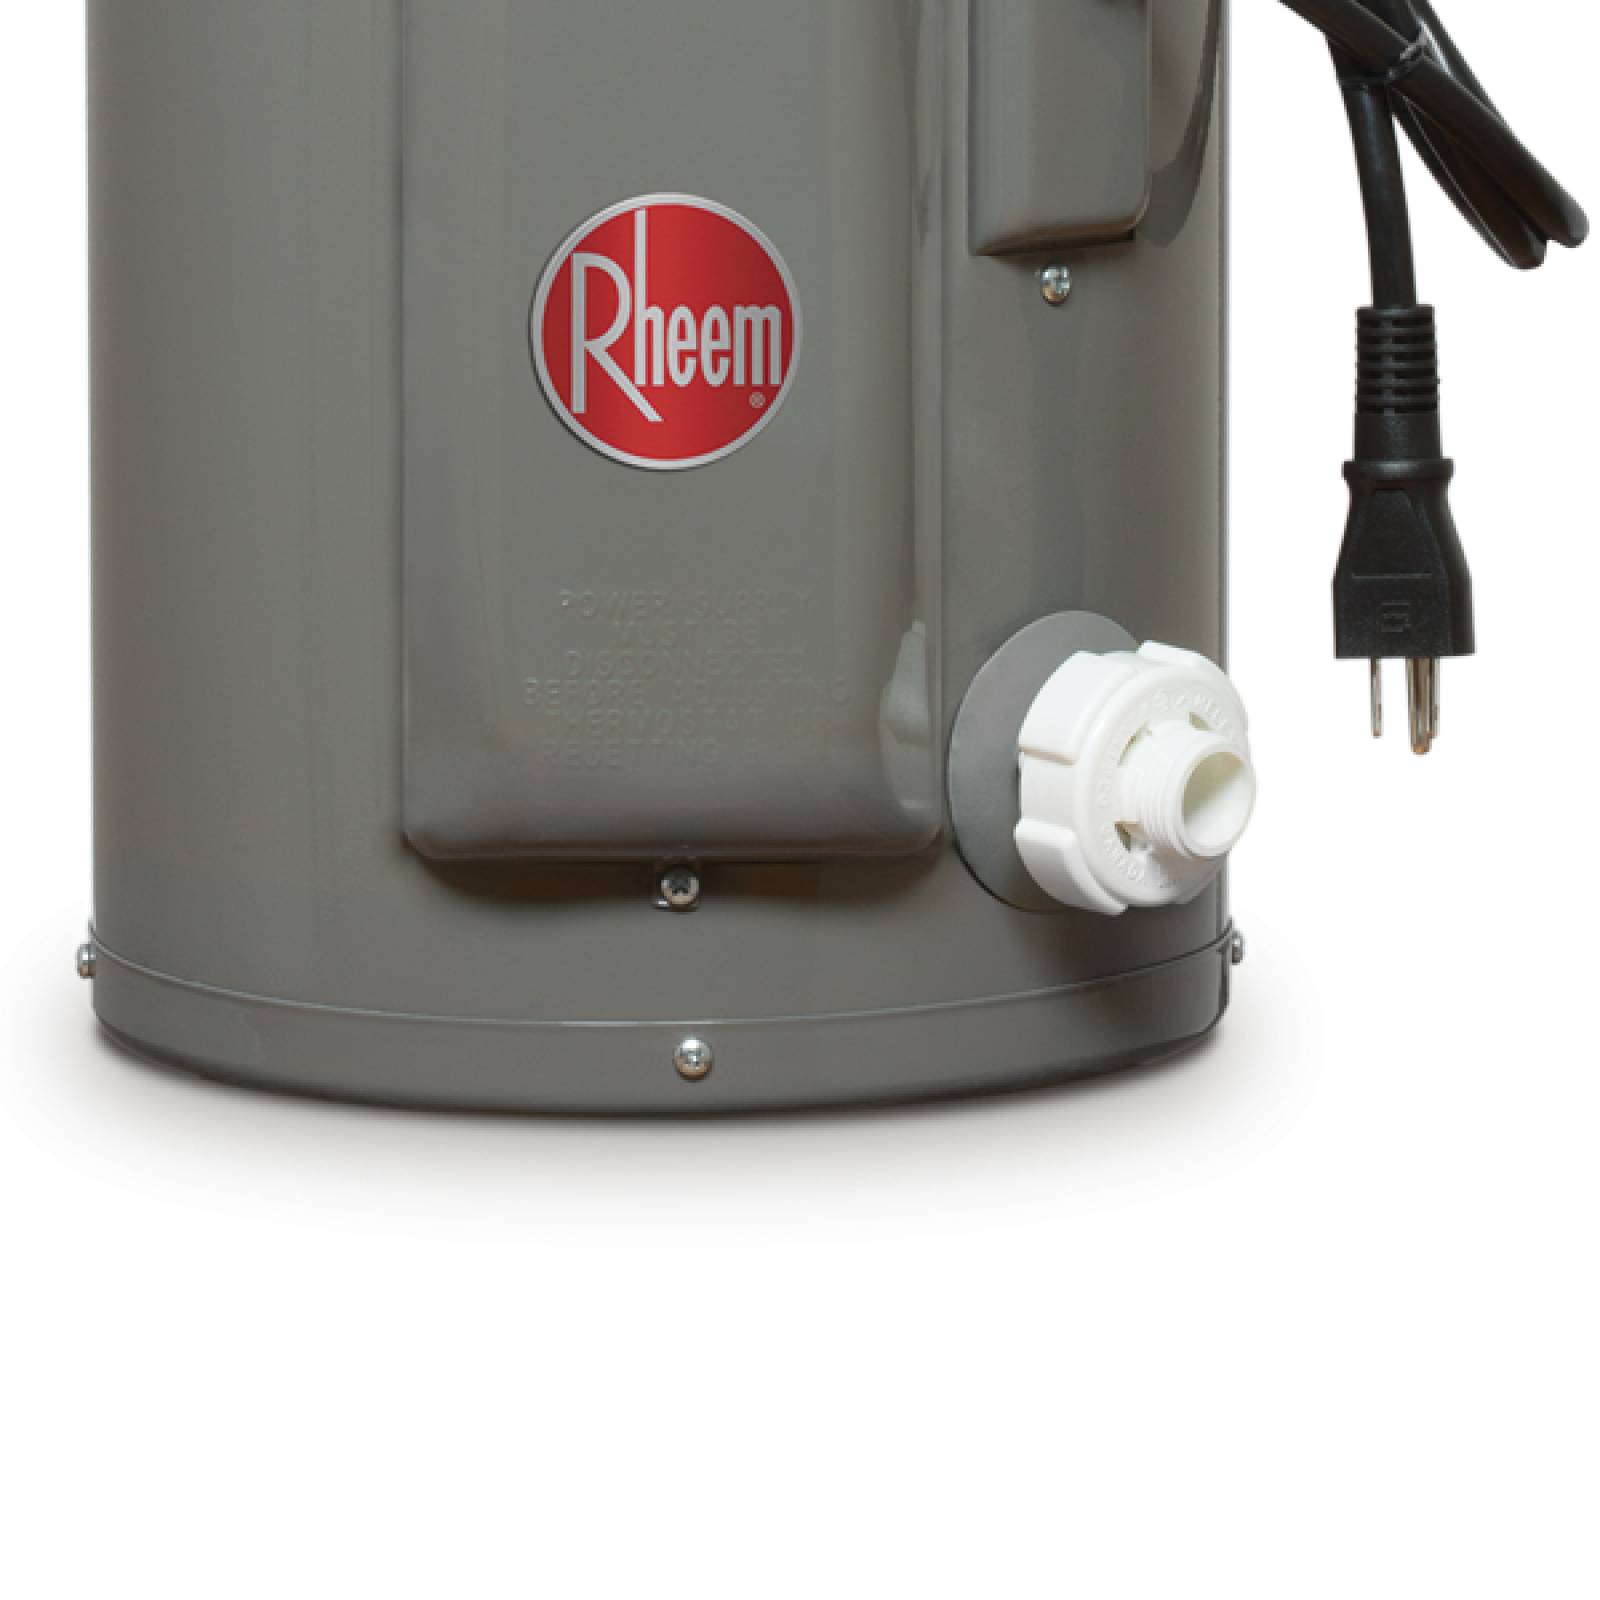 Calentador Agua Depósito Eléctrico Rheem 9L 127V+Instalación 